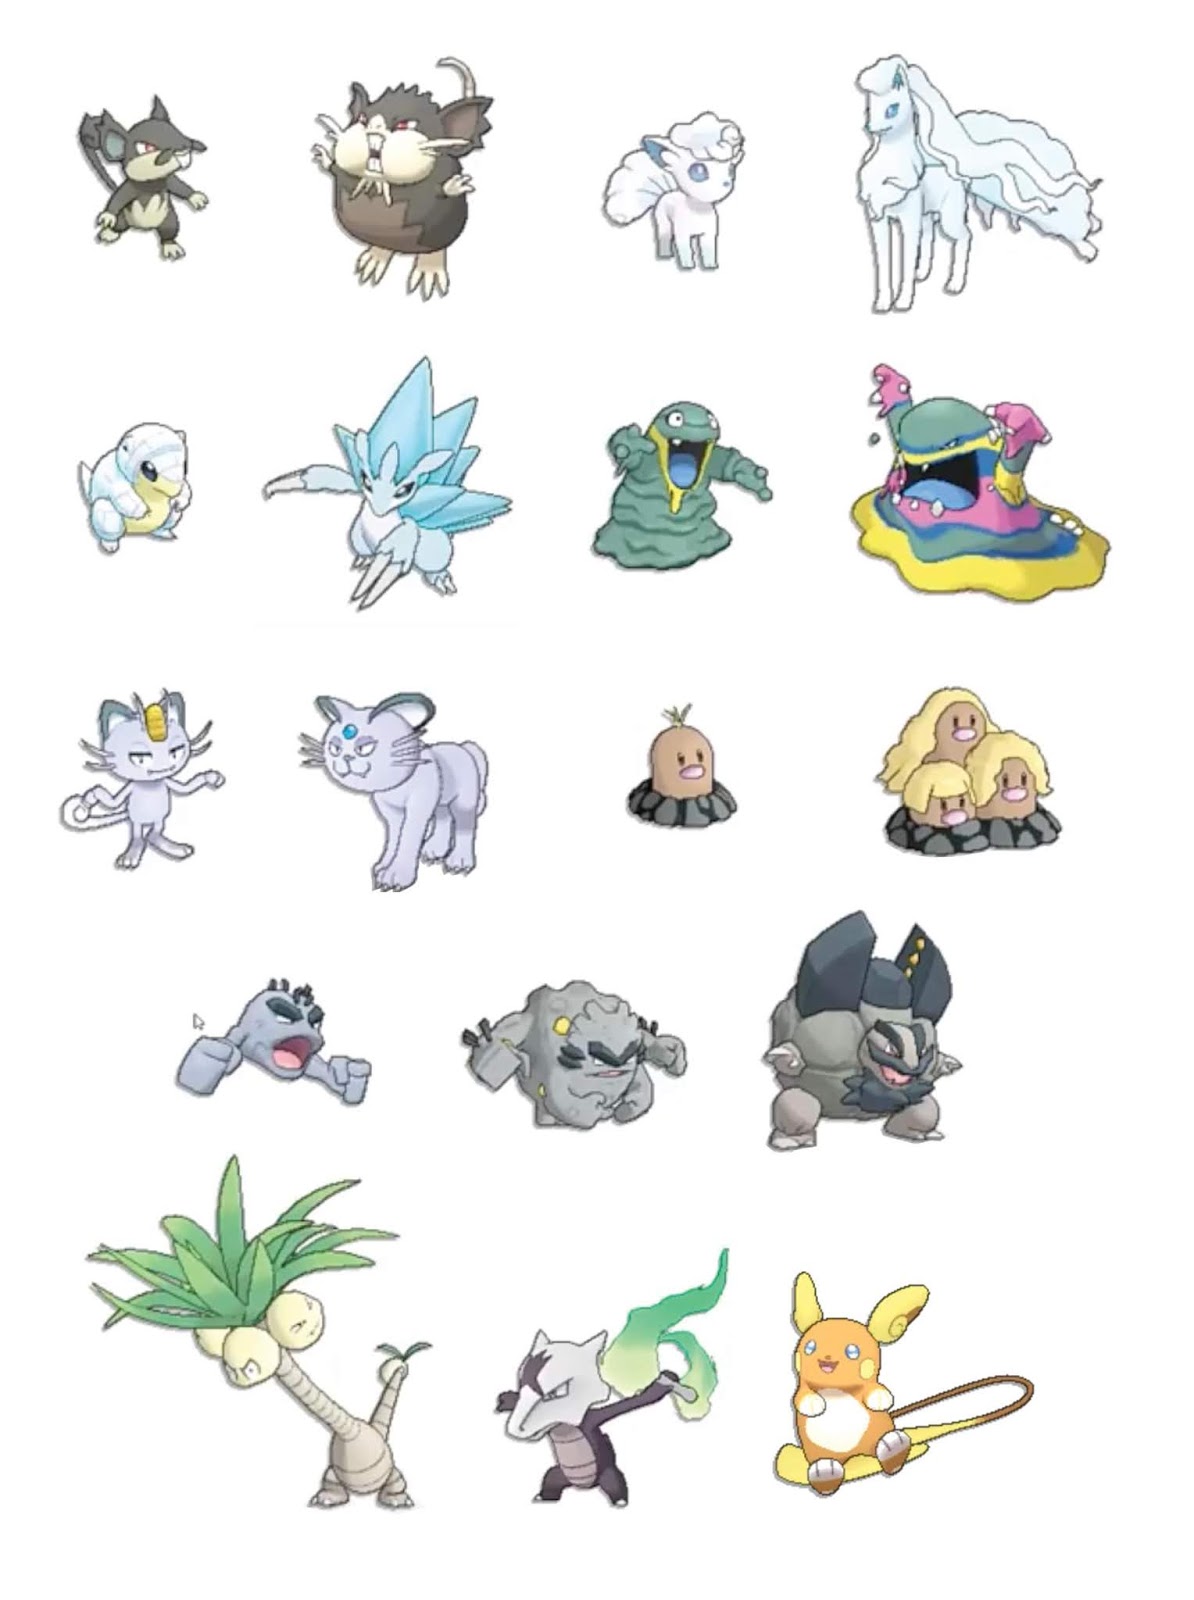 Saiba tudo sobre os Alola Forms, versões alteradas de Pokémon